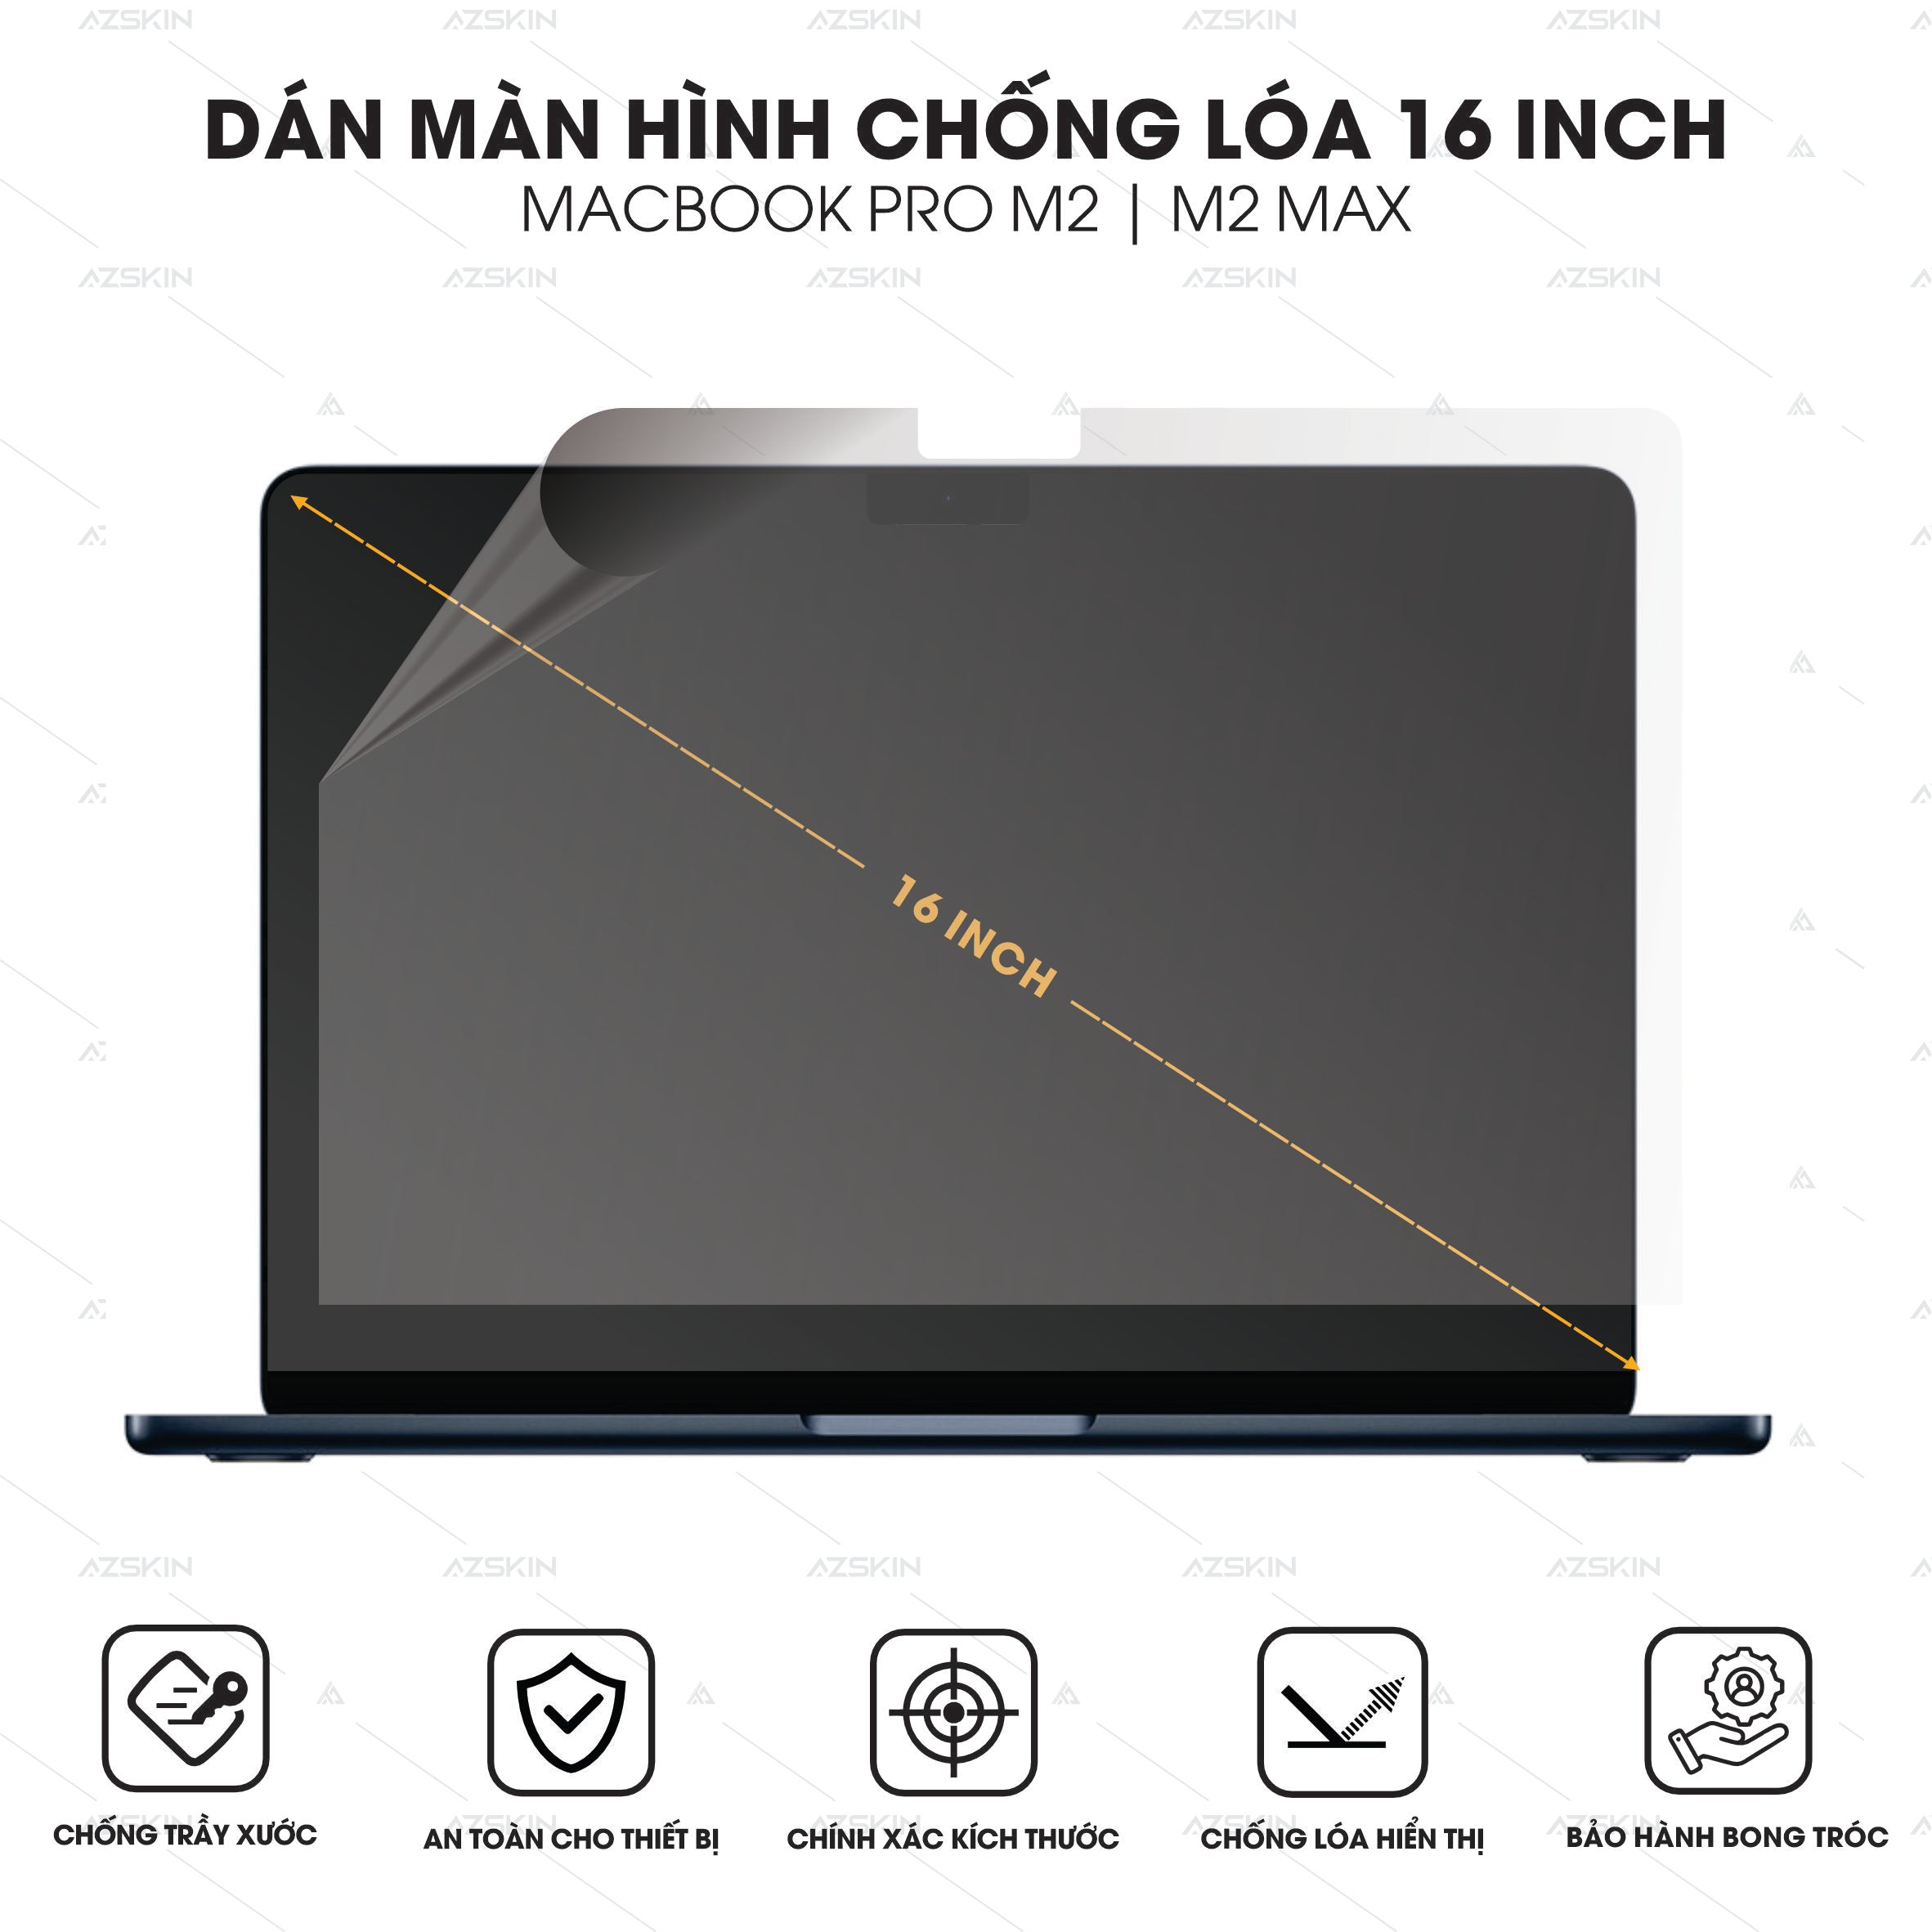 Dán màn hình chống loá cho Macbook Pro 16 inch M2 / M2 Max